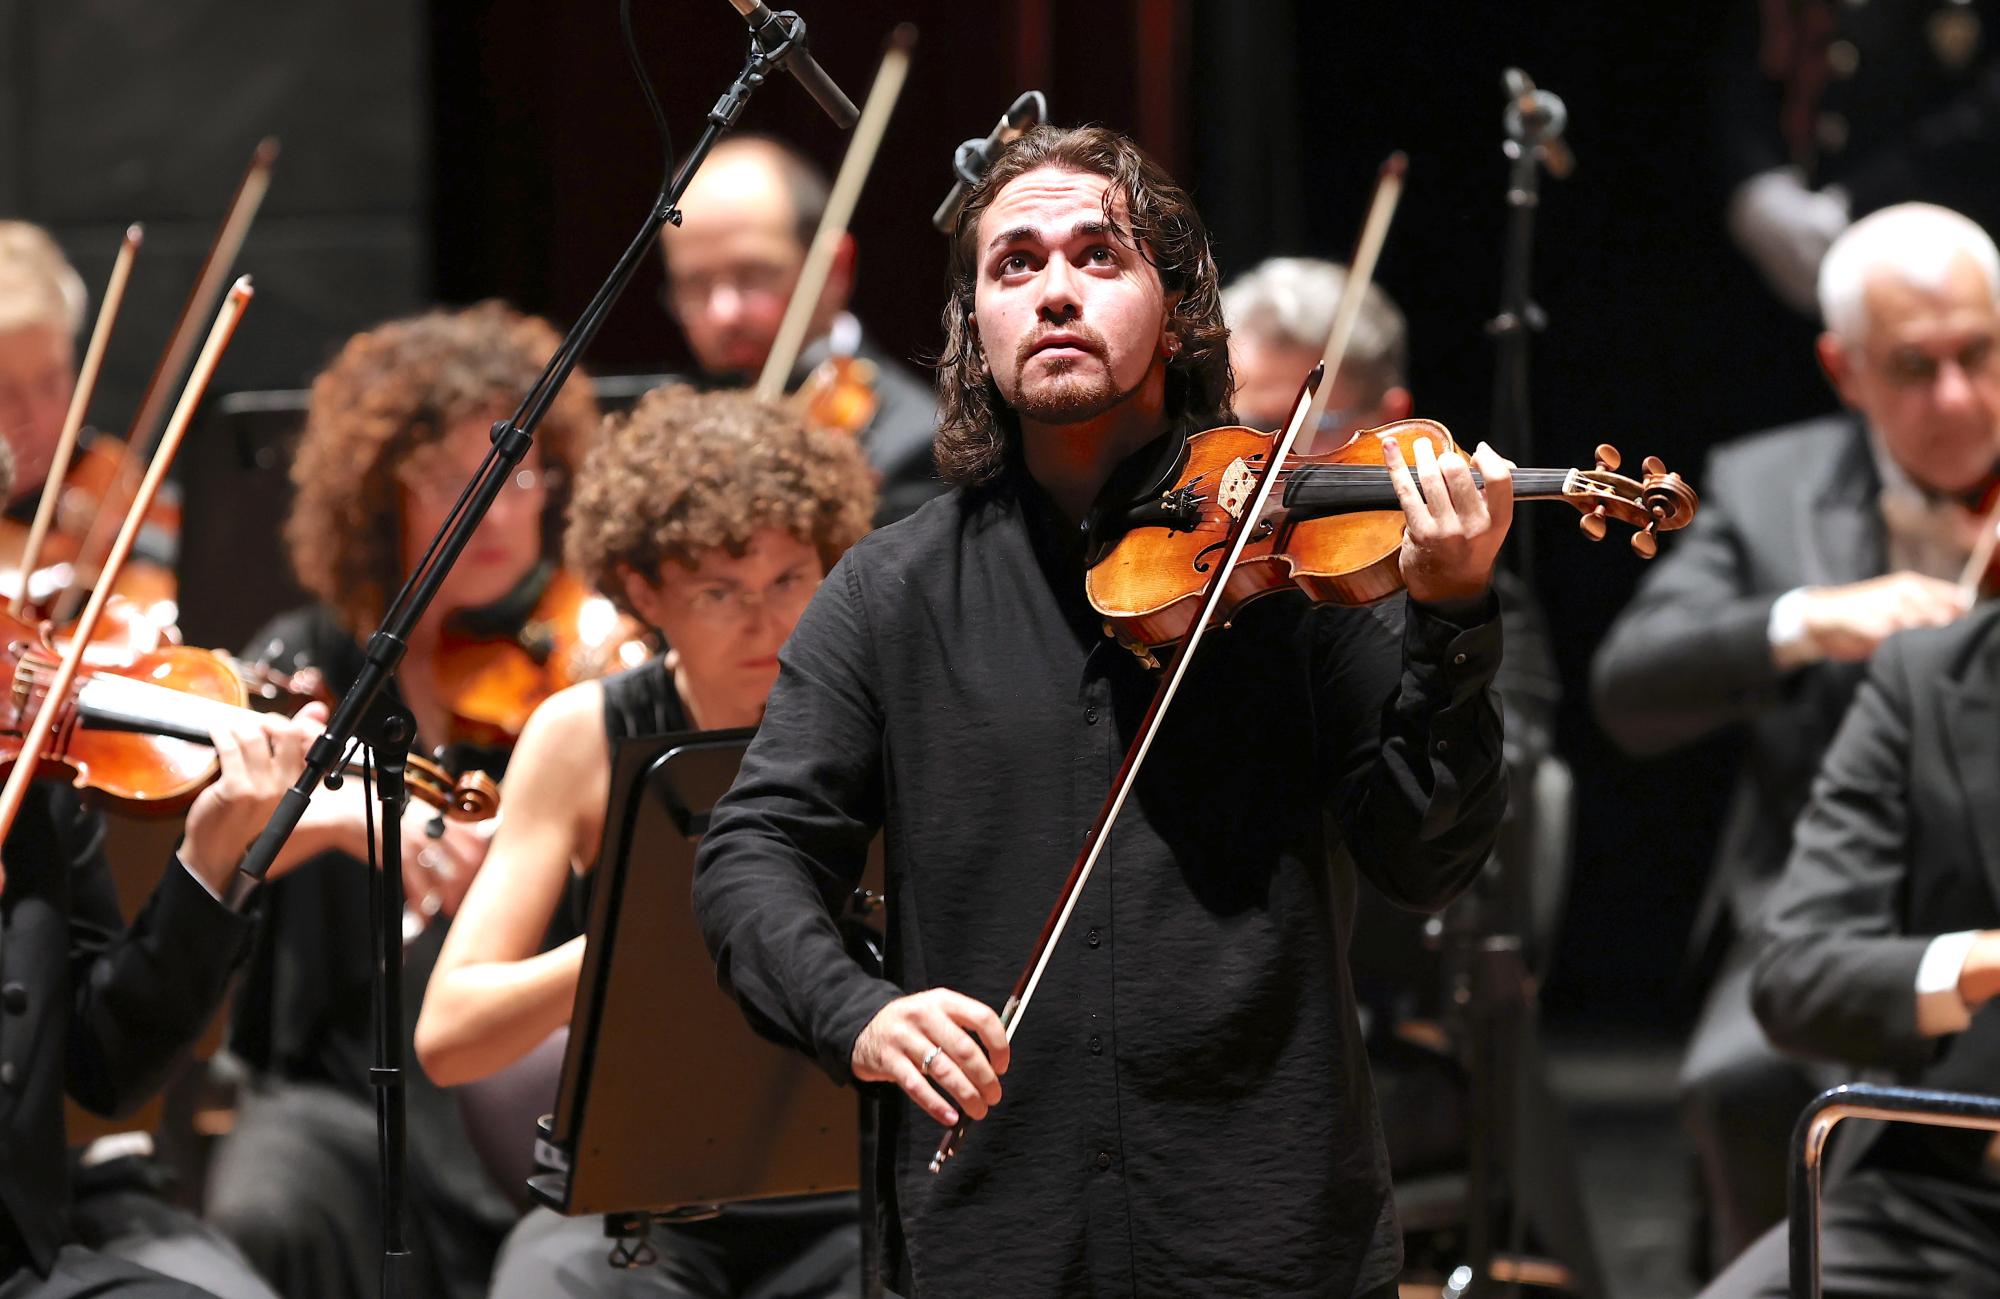 Giuseppe Gibboni con il "Cannone" al Concerto del 5 ottobre 2022